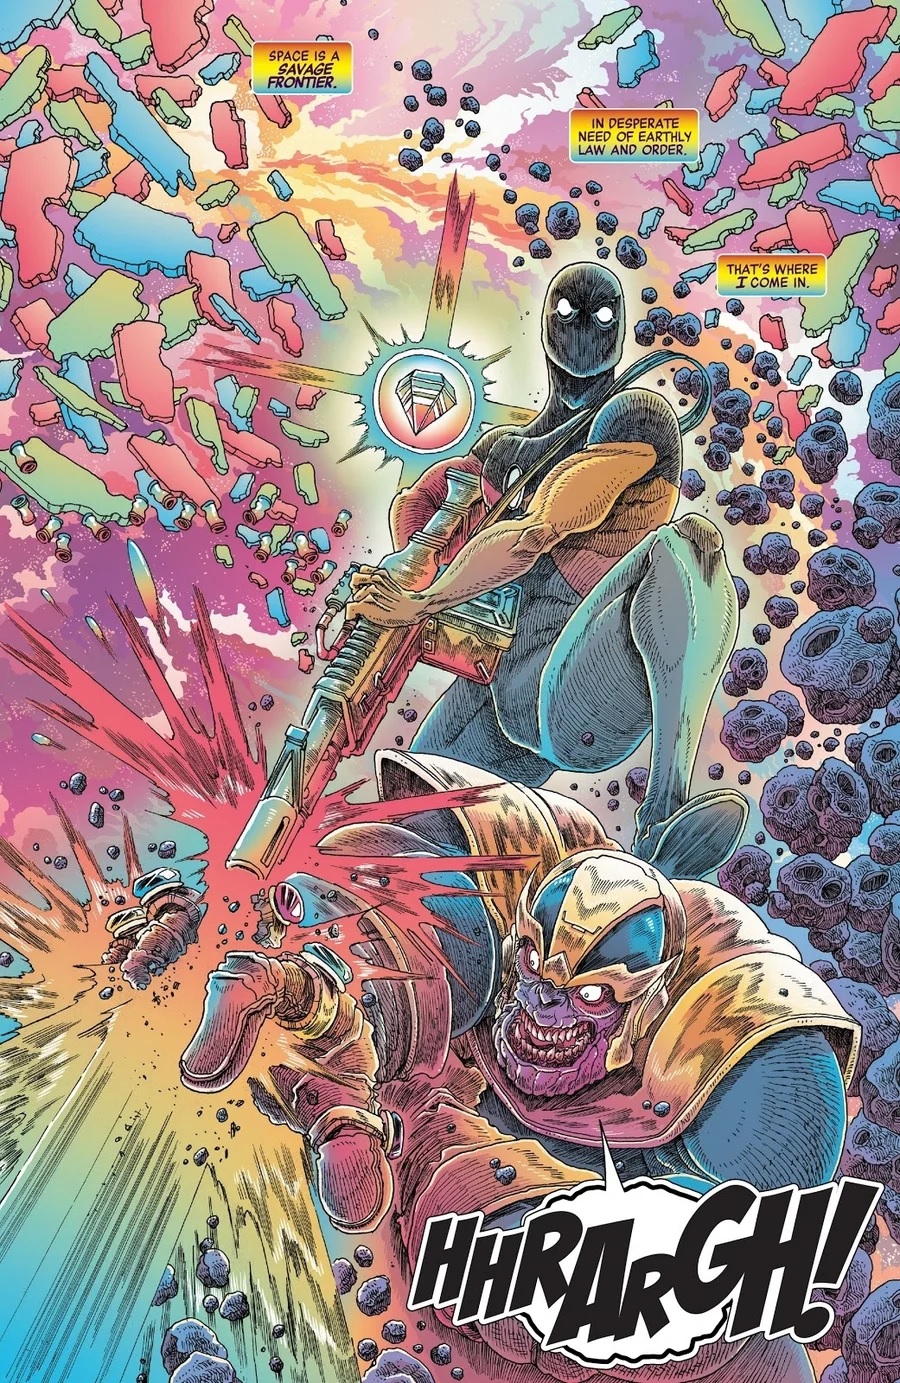 Quadrinho da Marvel revela herói que derrotaria Thanos facilmente